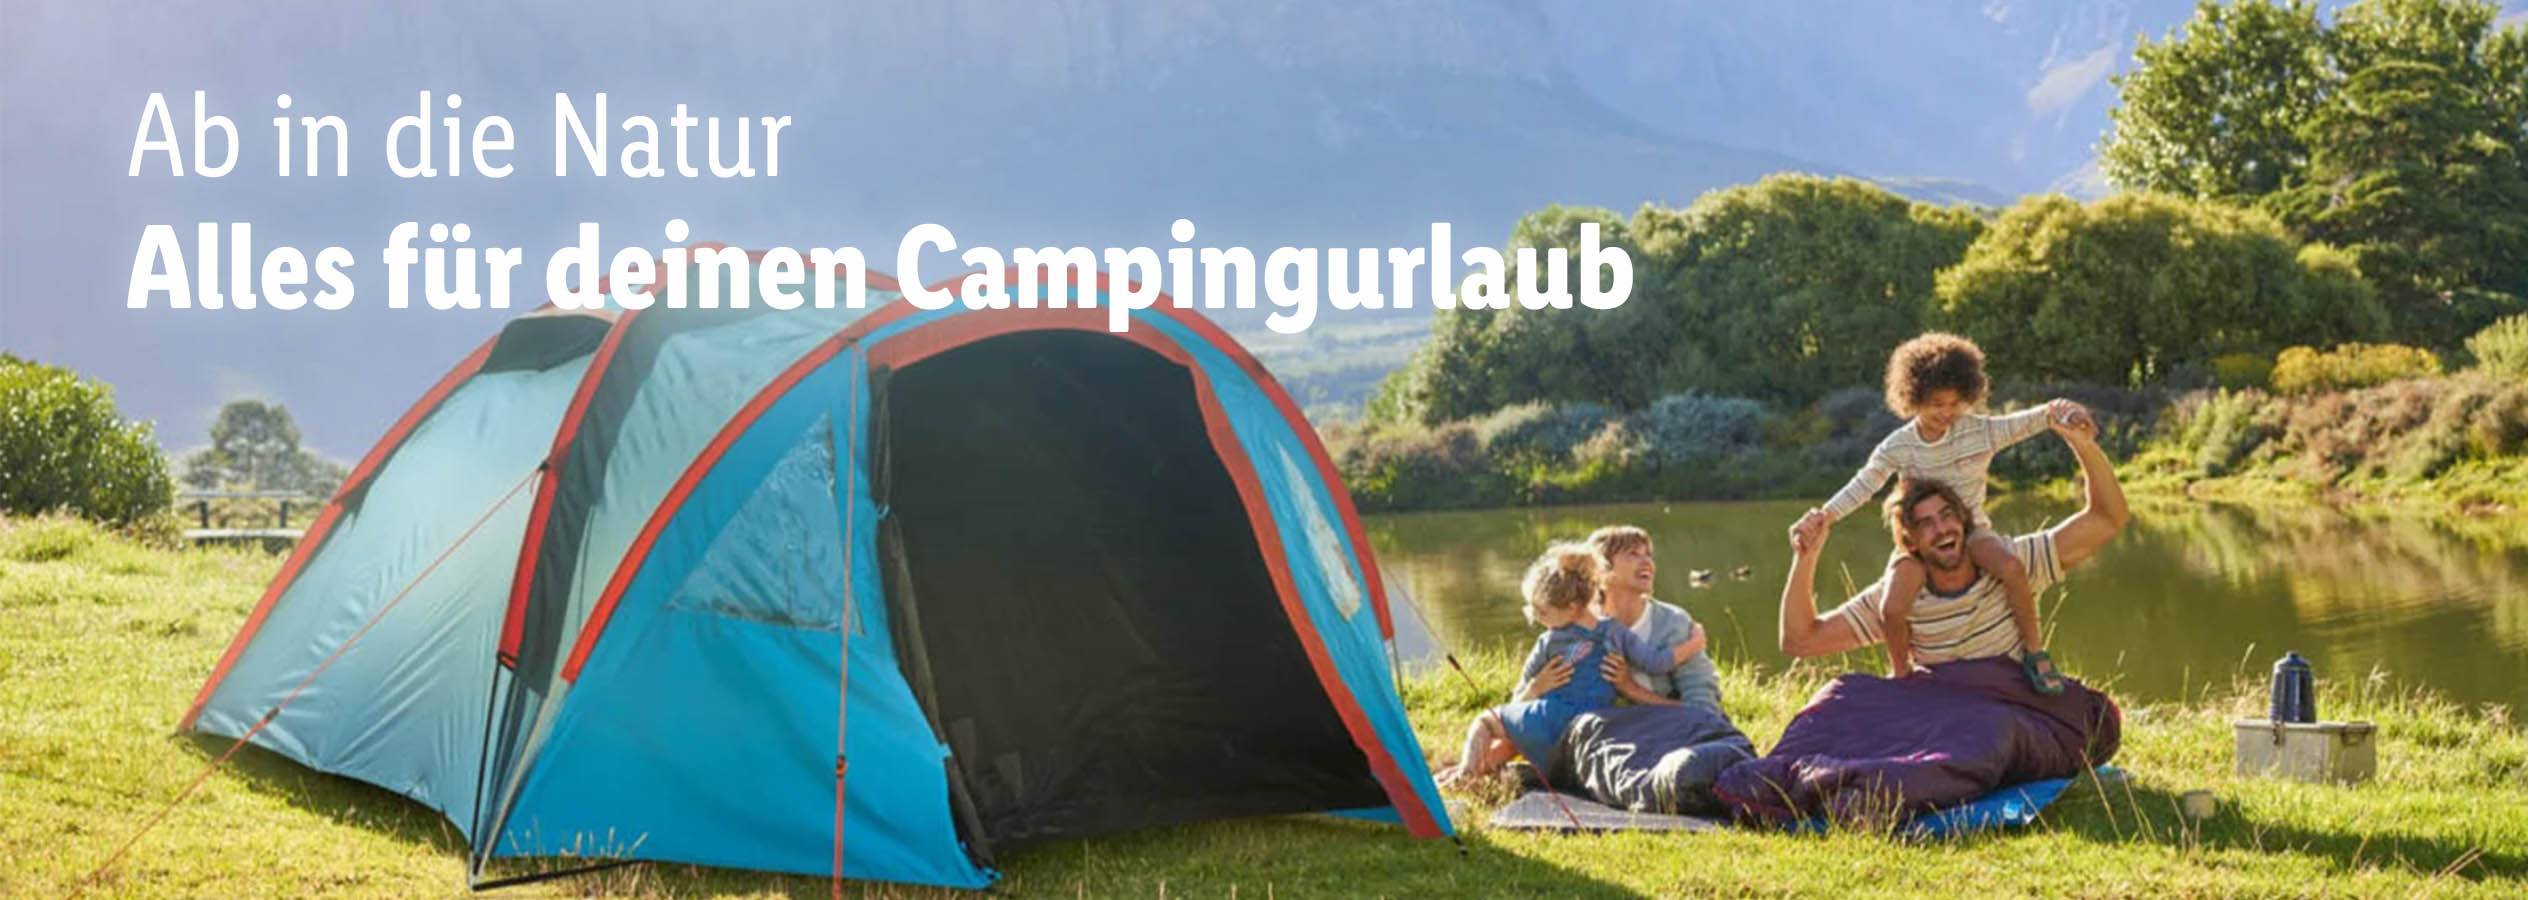 Reisebegleiter fürs Camping